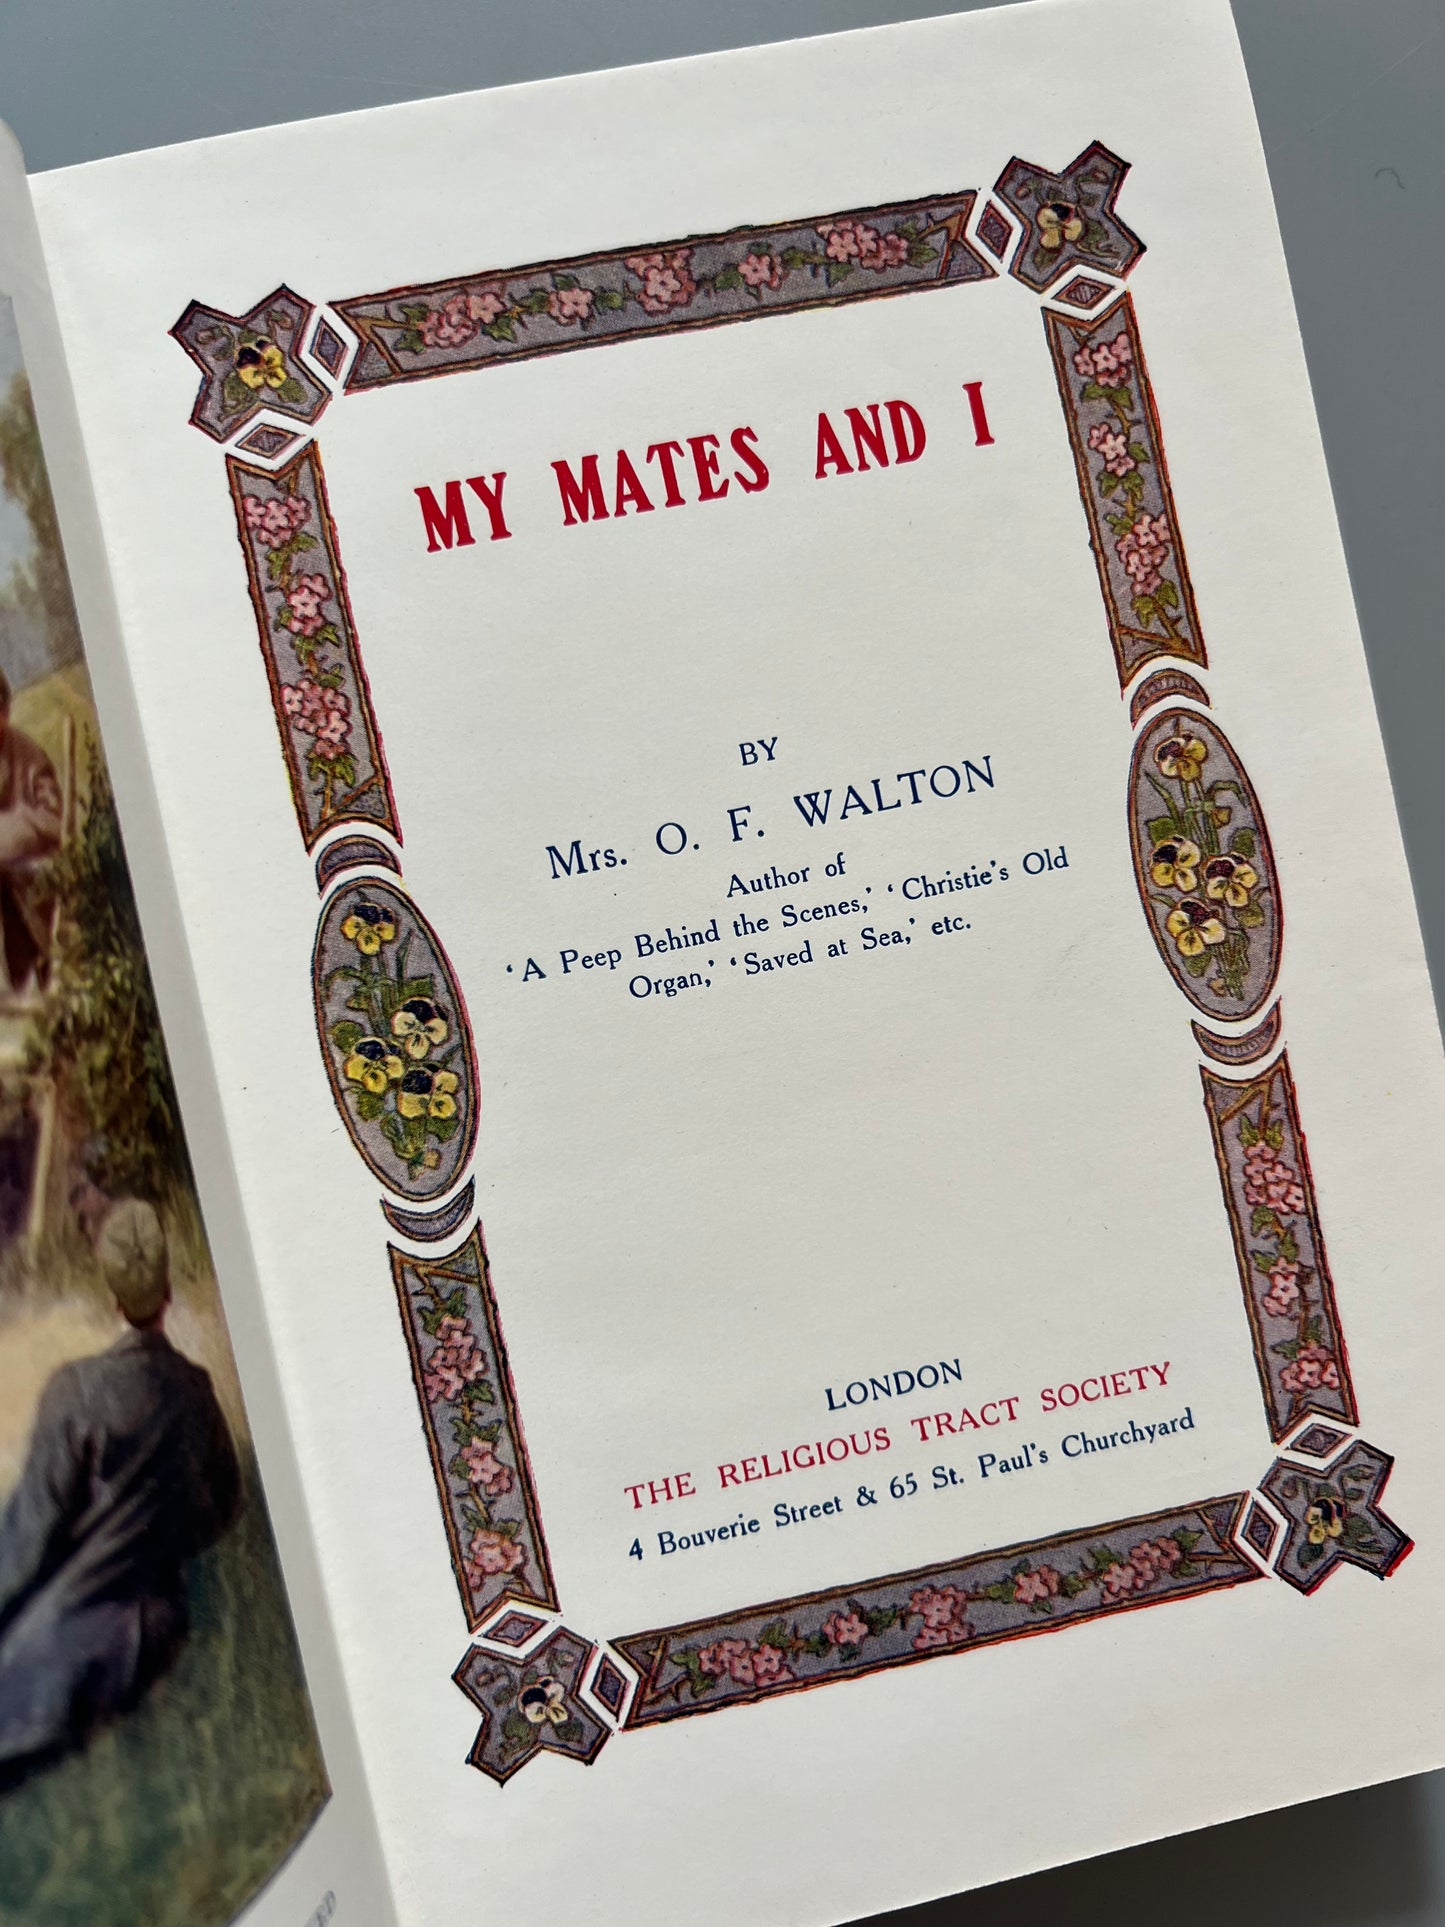 My mates and I, Mrs. O. F. Walton - The Religious Tract Society, ca. 1910